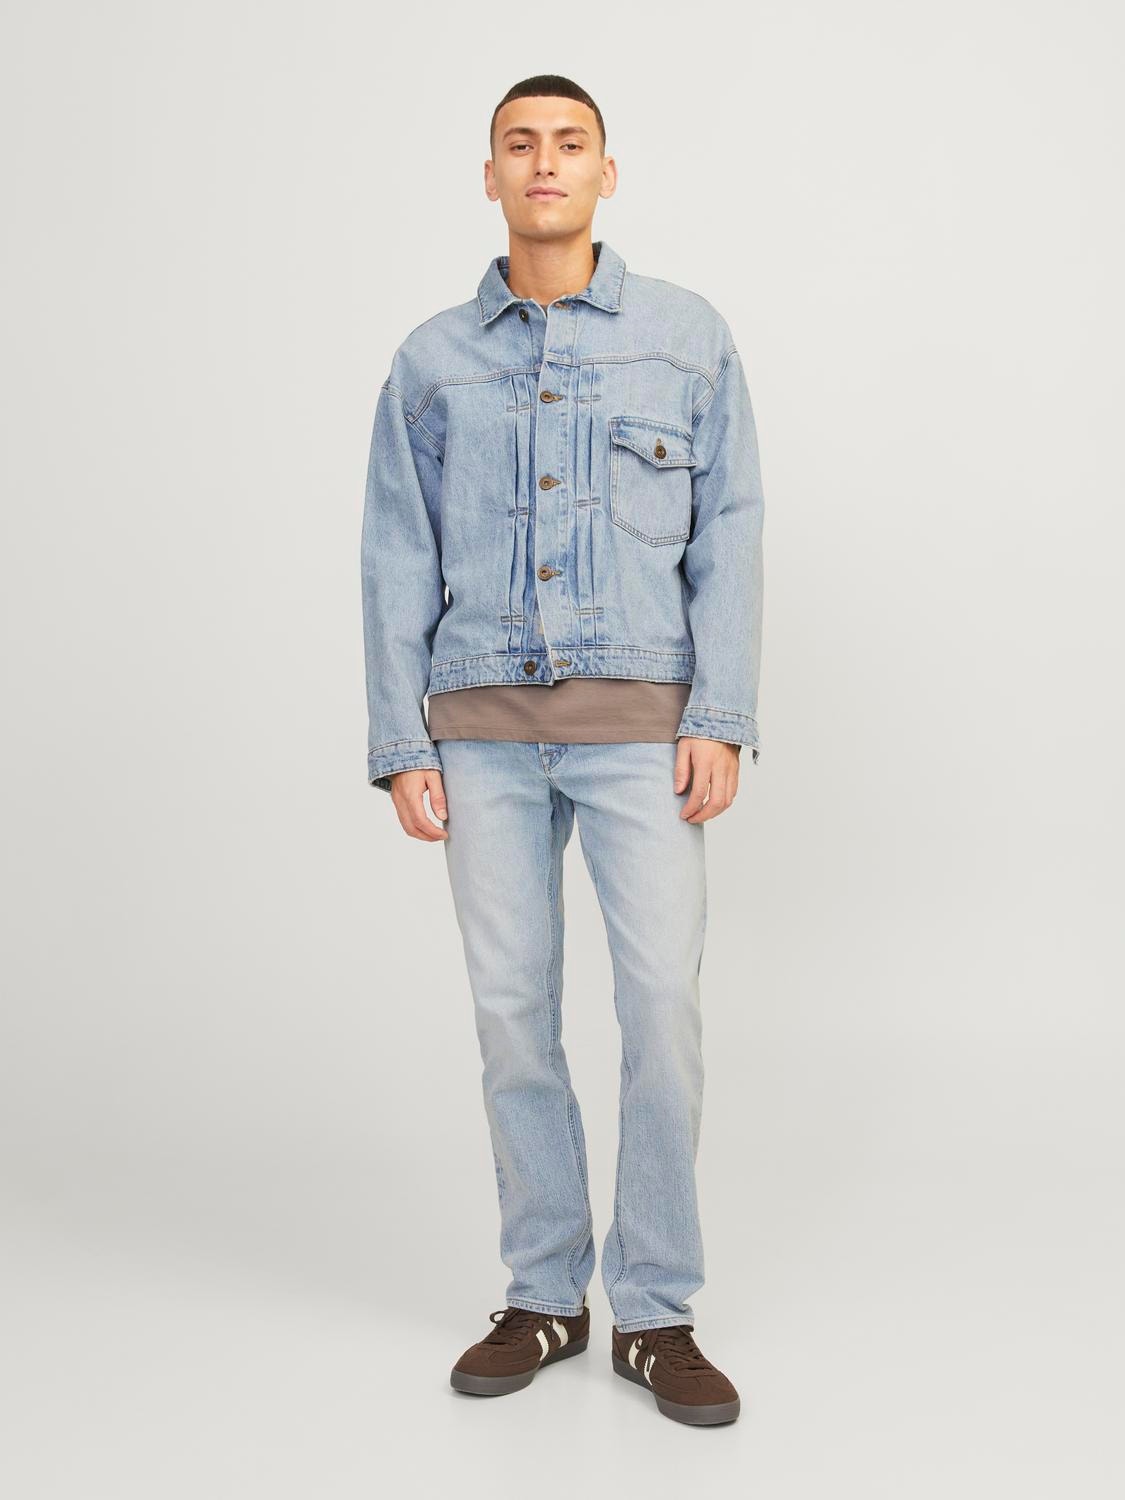 Jack & Jones JJITIM JJORIGINAL AM 439 Slim Fit jeans mit geradem Bein -Blue Denim - 12249053